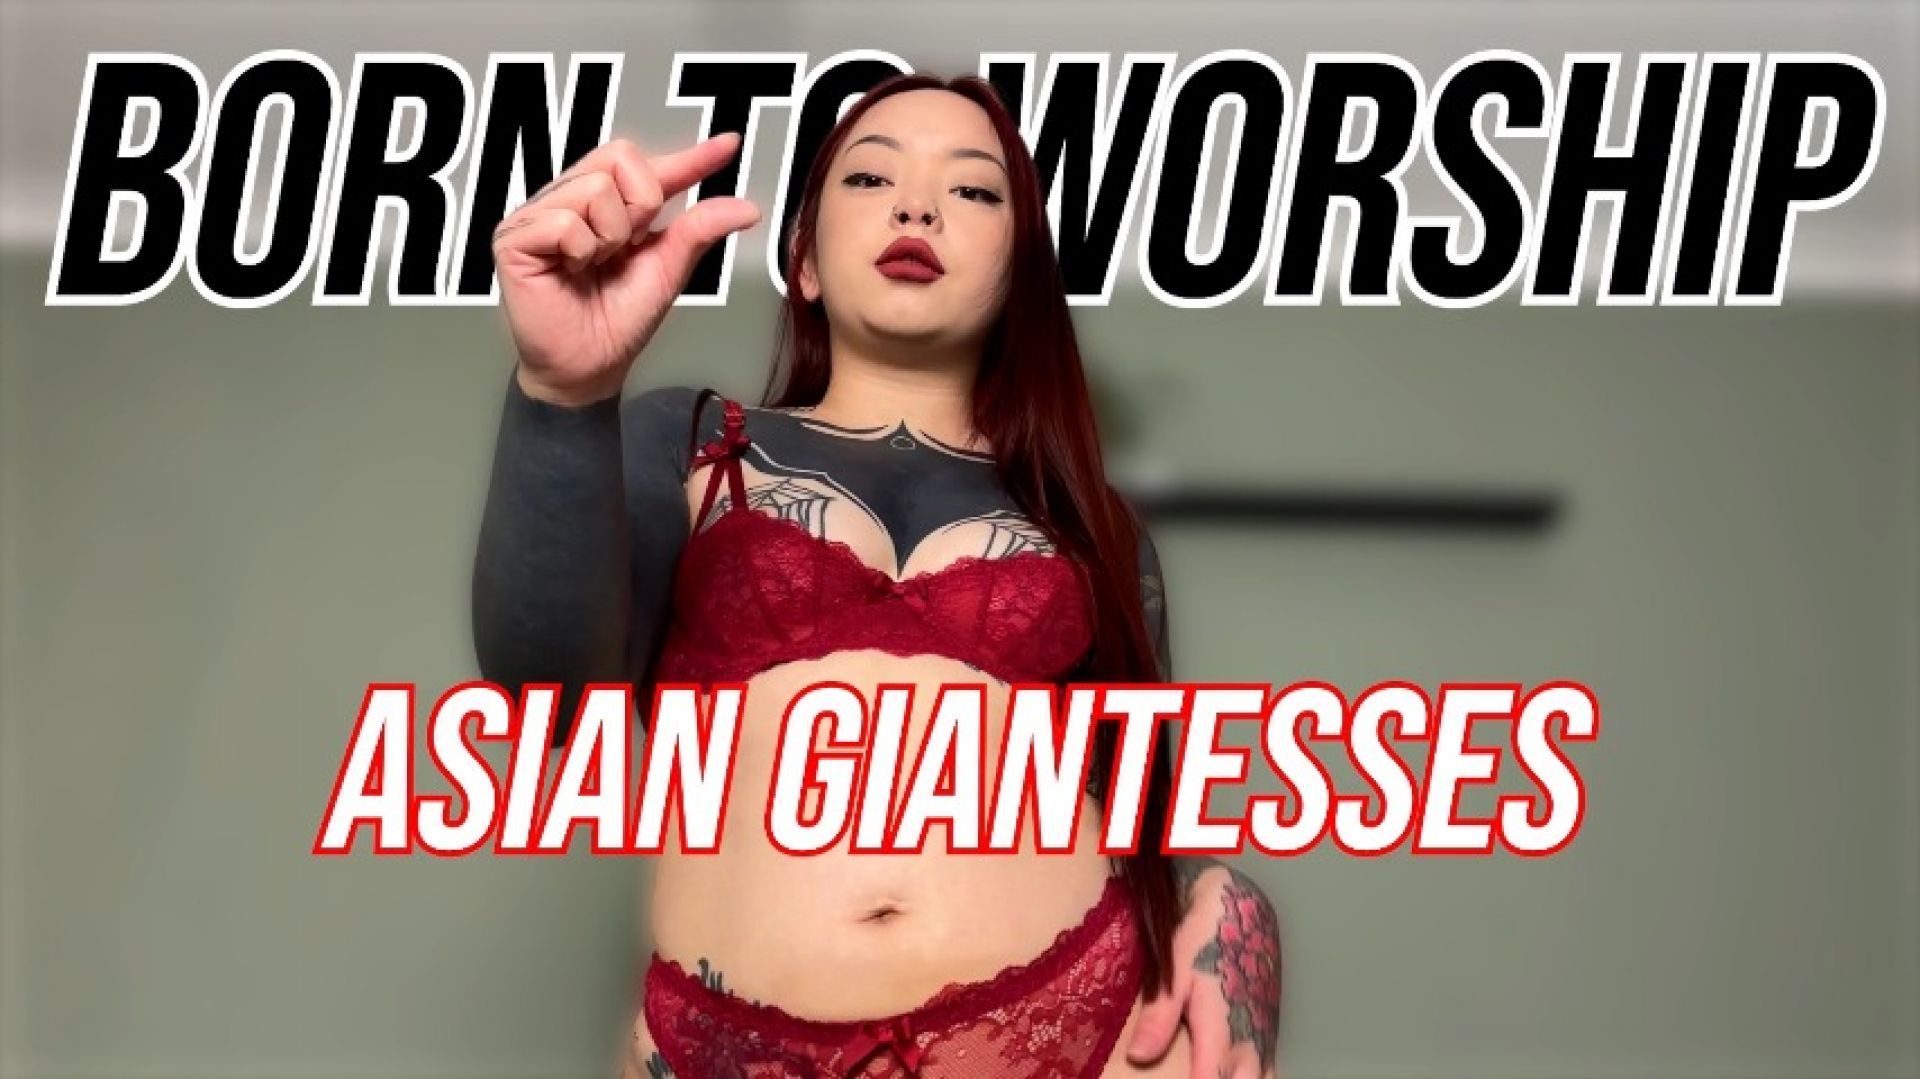 Born To Worship Asian Giantesses